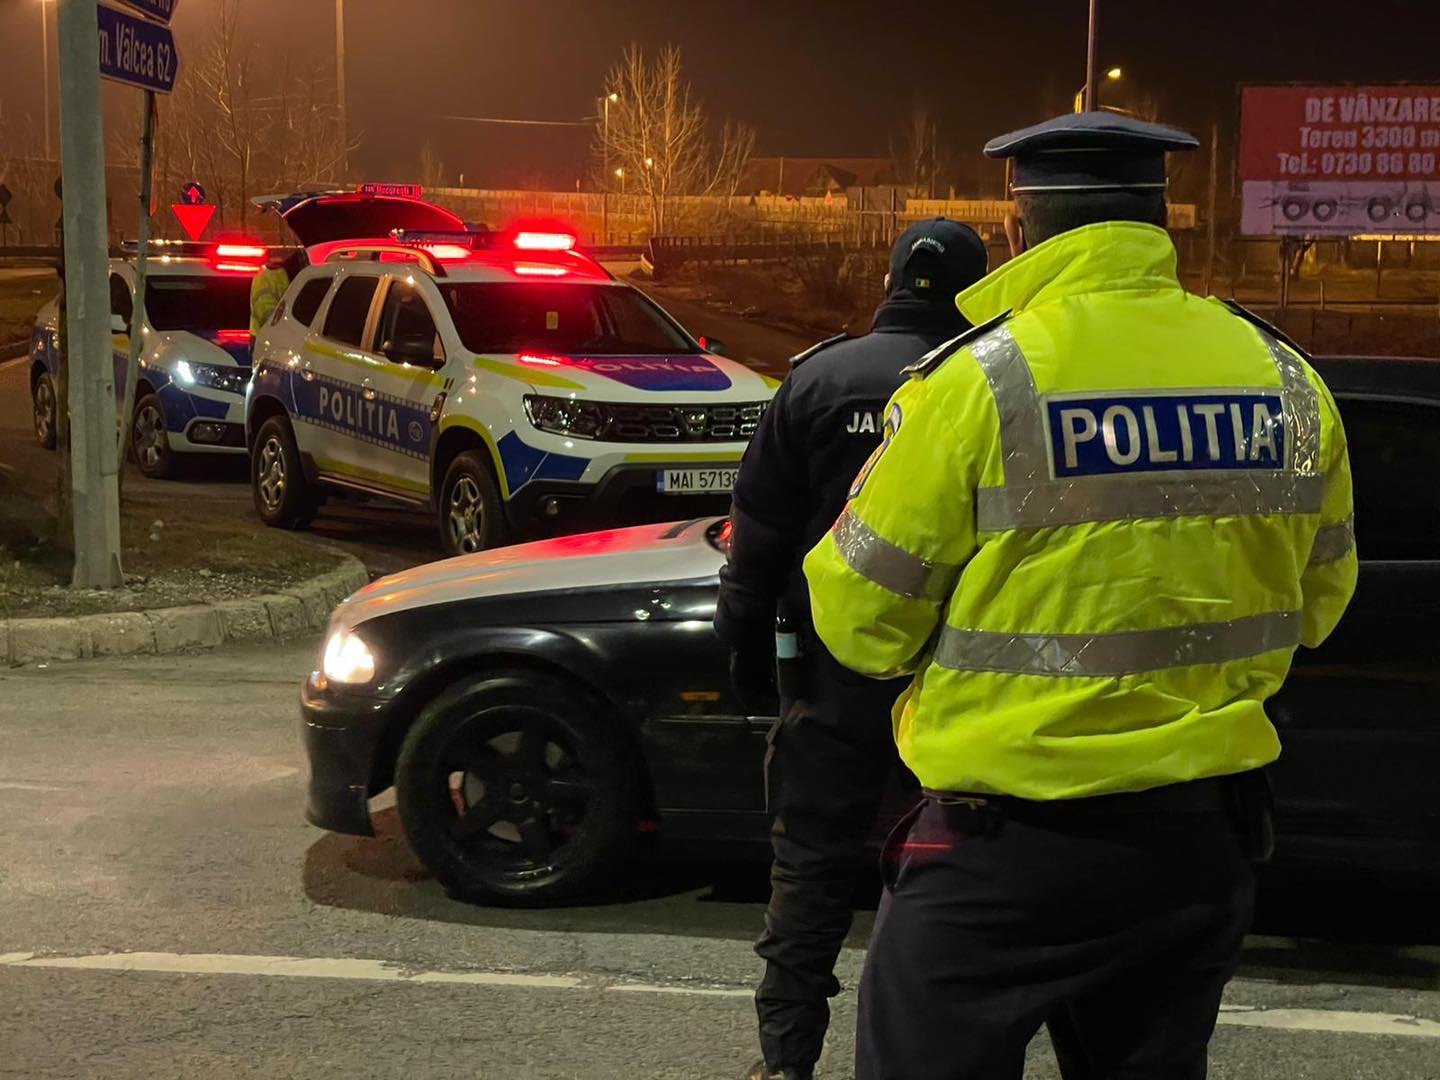 Rendőrségi hírszemle: Mindenszentek ünnepén is történtek balesetek